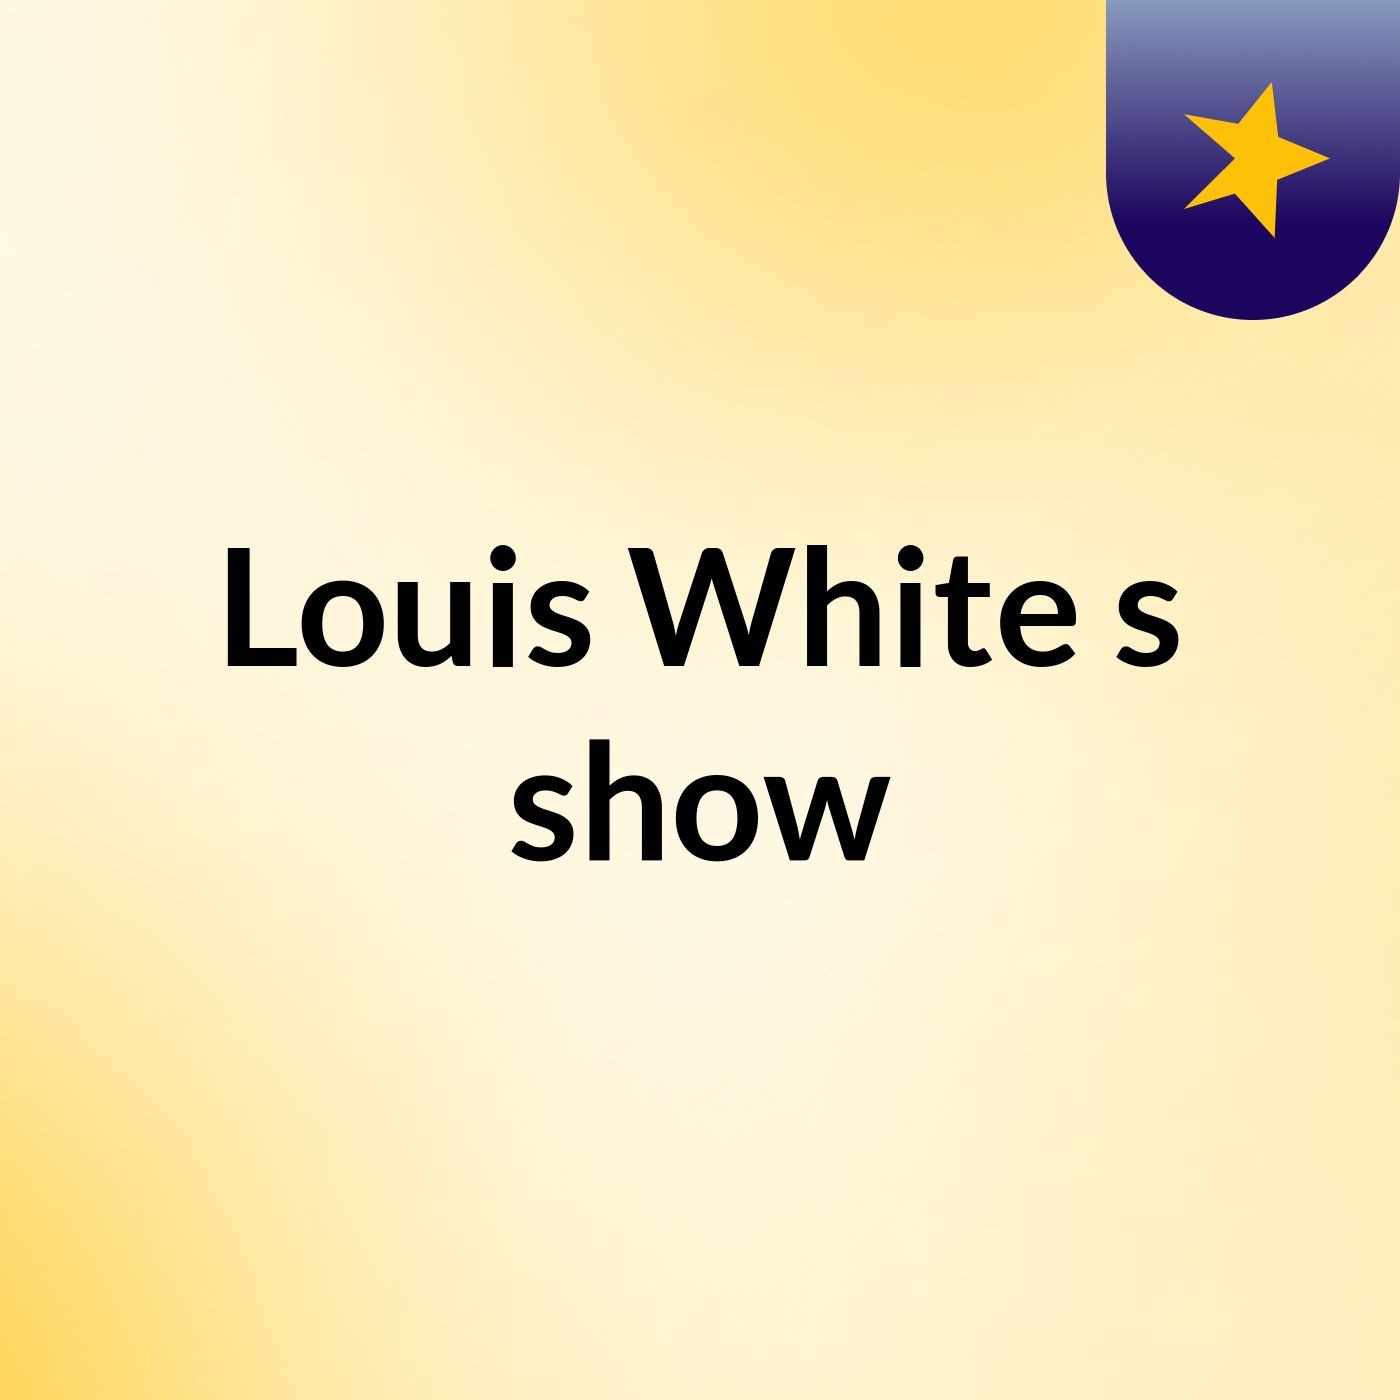 Episode 4 - Louis White's show